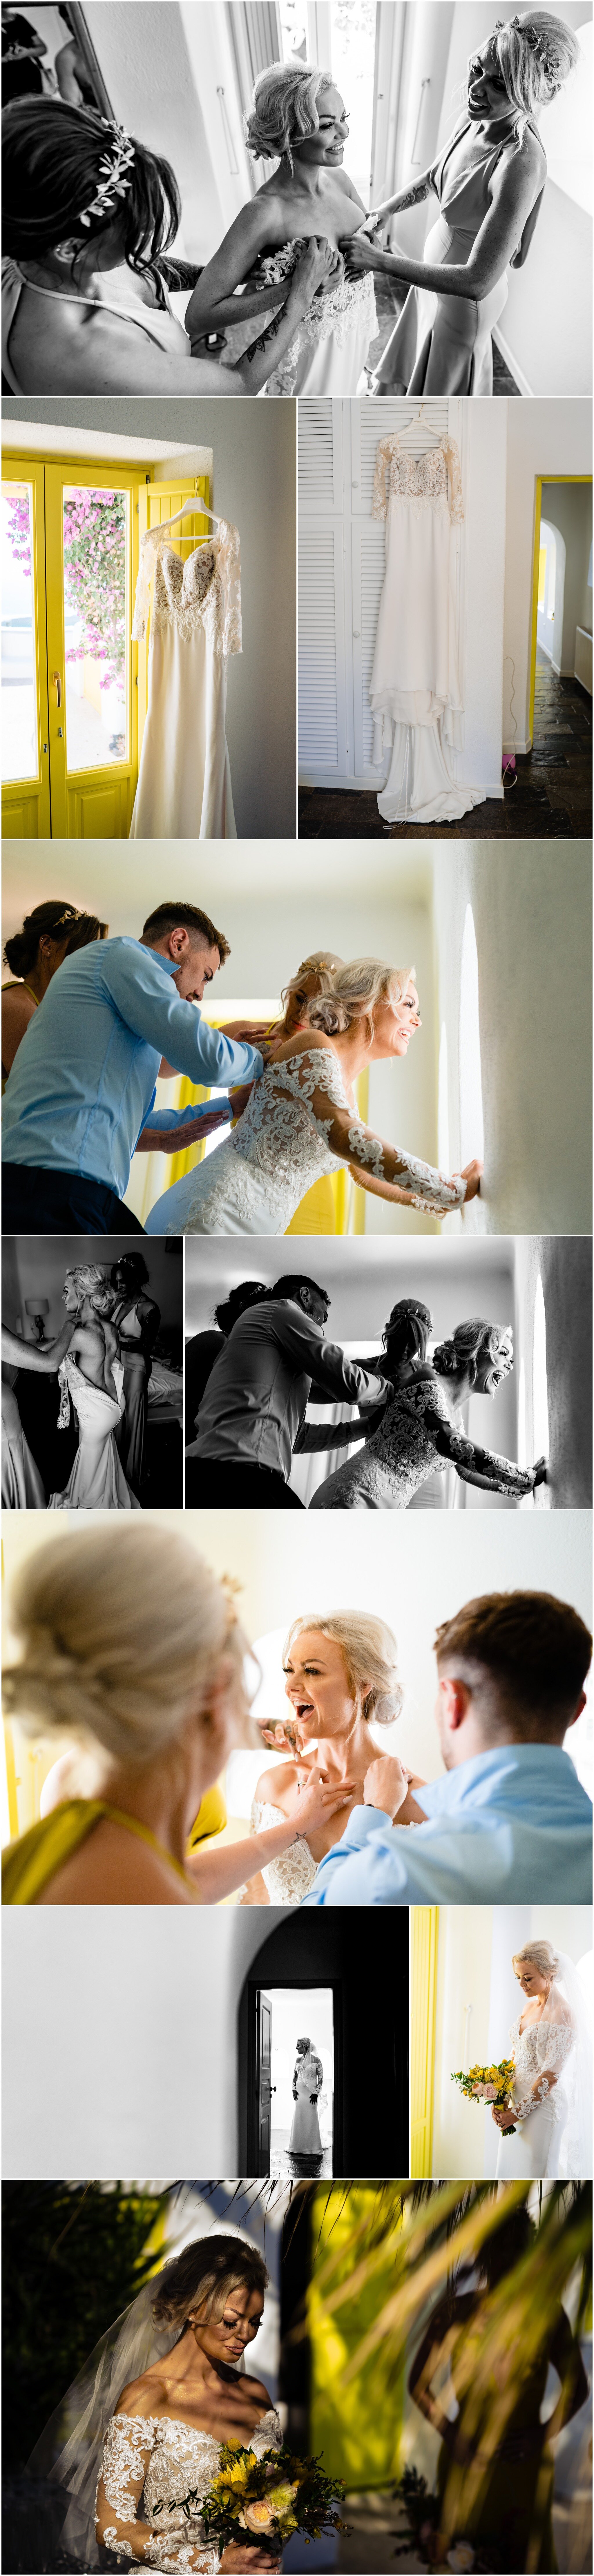 santorini-wedding-photographer-ricky-baillie-photography-wedding-planner-santorini-greece_0005.jpg